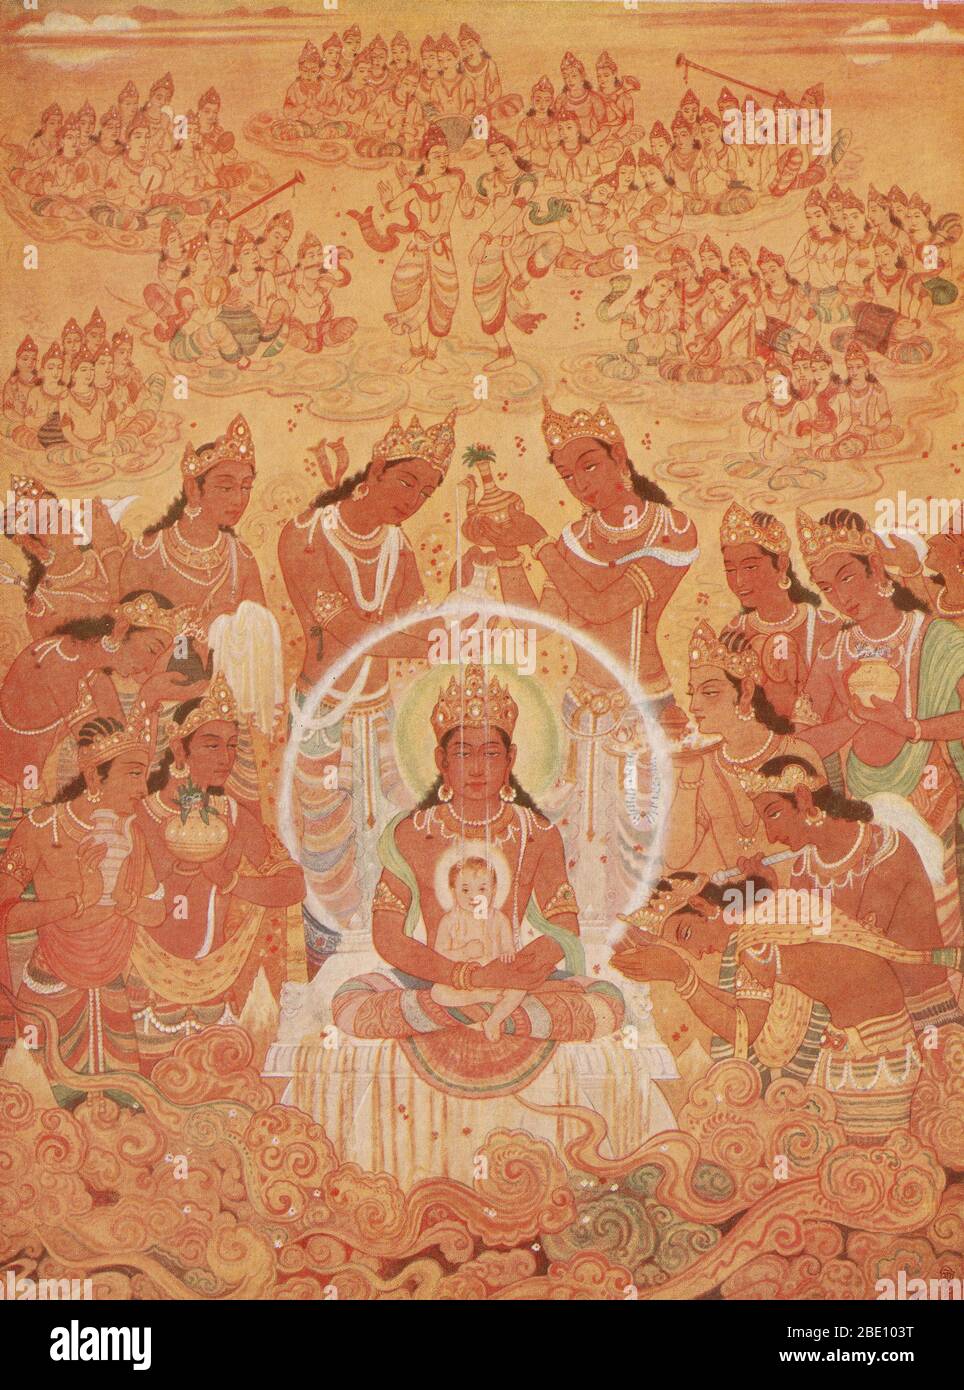 Mahavira est le fondateur du Jainisme. Il a vécu entre 599 et 527 BCE. Mahavira prêchait que chaque âme vivante porte des atomes karmiques qui sont accumulés par diverses actions. Pour éliminer le karma, il faut vivre selon les enseignements de Jain, qui mettent l'accent sur la non-violence et la non-attachement. Banque D'Images